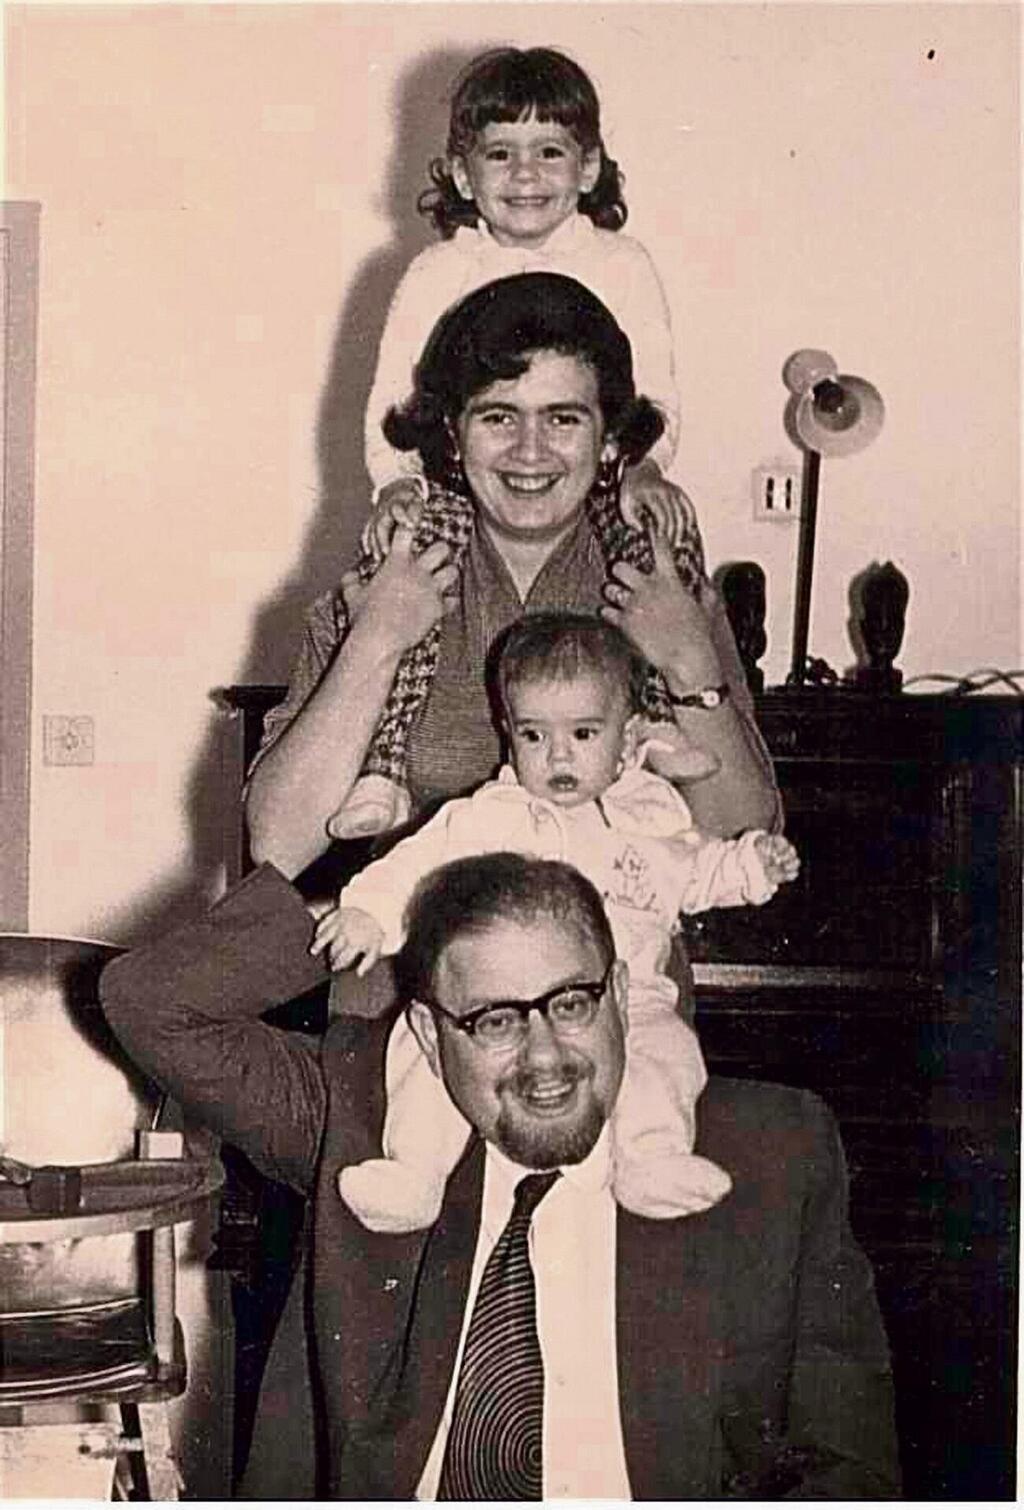 אמונה אלון ומשפחתה. אביה, הרב פרופ' פינחס פלאי; אמה, פנינה פלאי; ואחותה הגדולה, בטחה הר־שפי